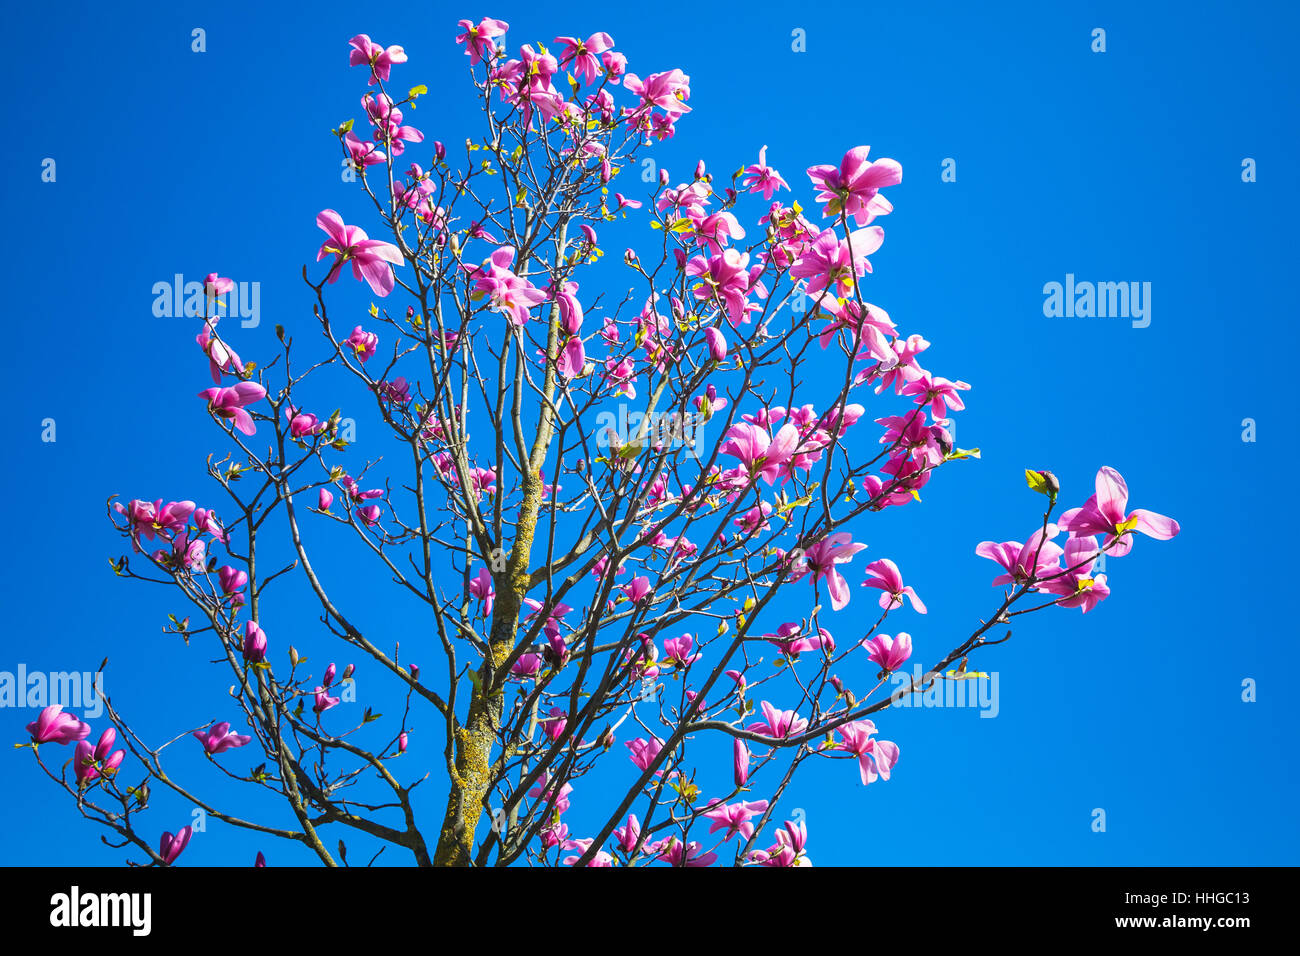 Magnolie mit rosa Blüten am strahlend blauen Himmelshintergrund Foto mit selektiven Fokus Stockfoto